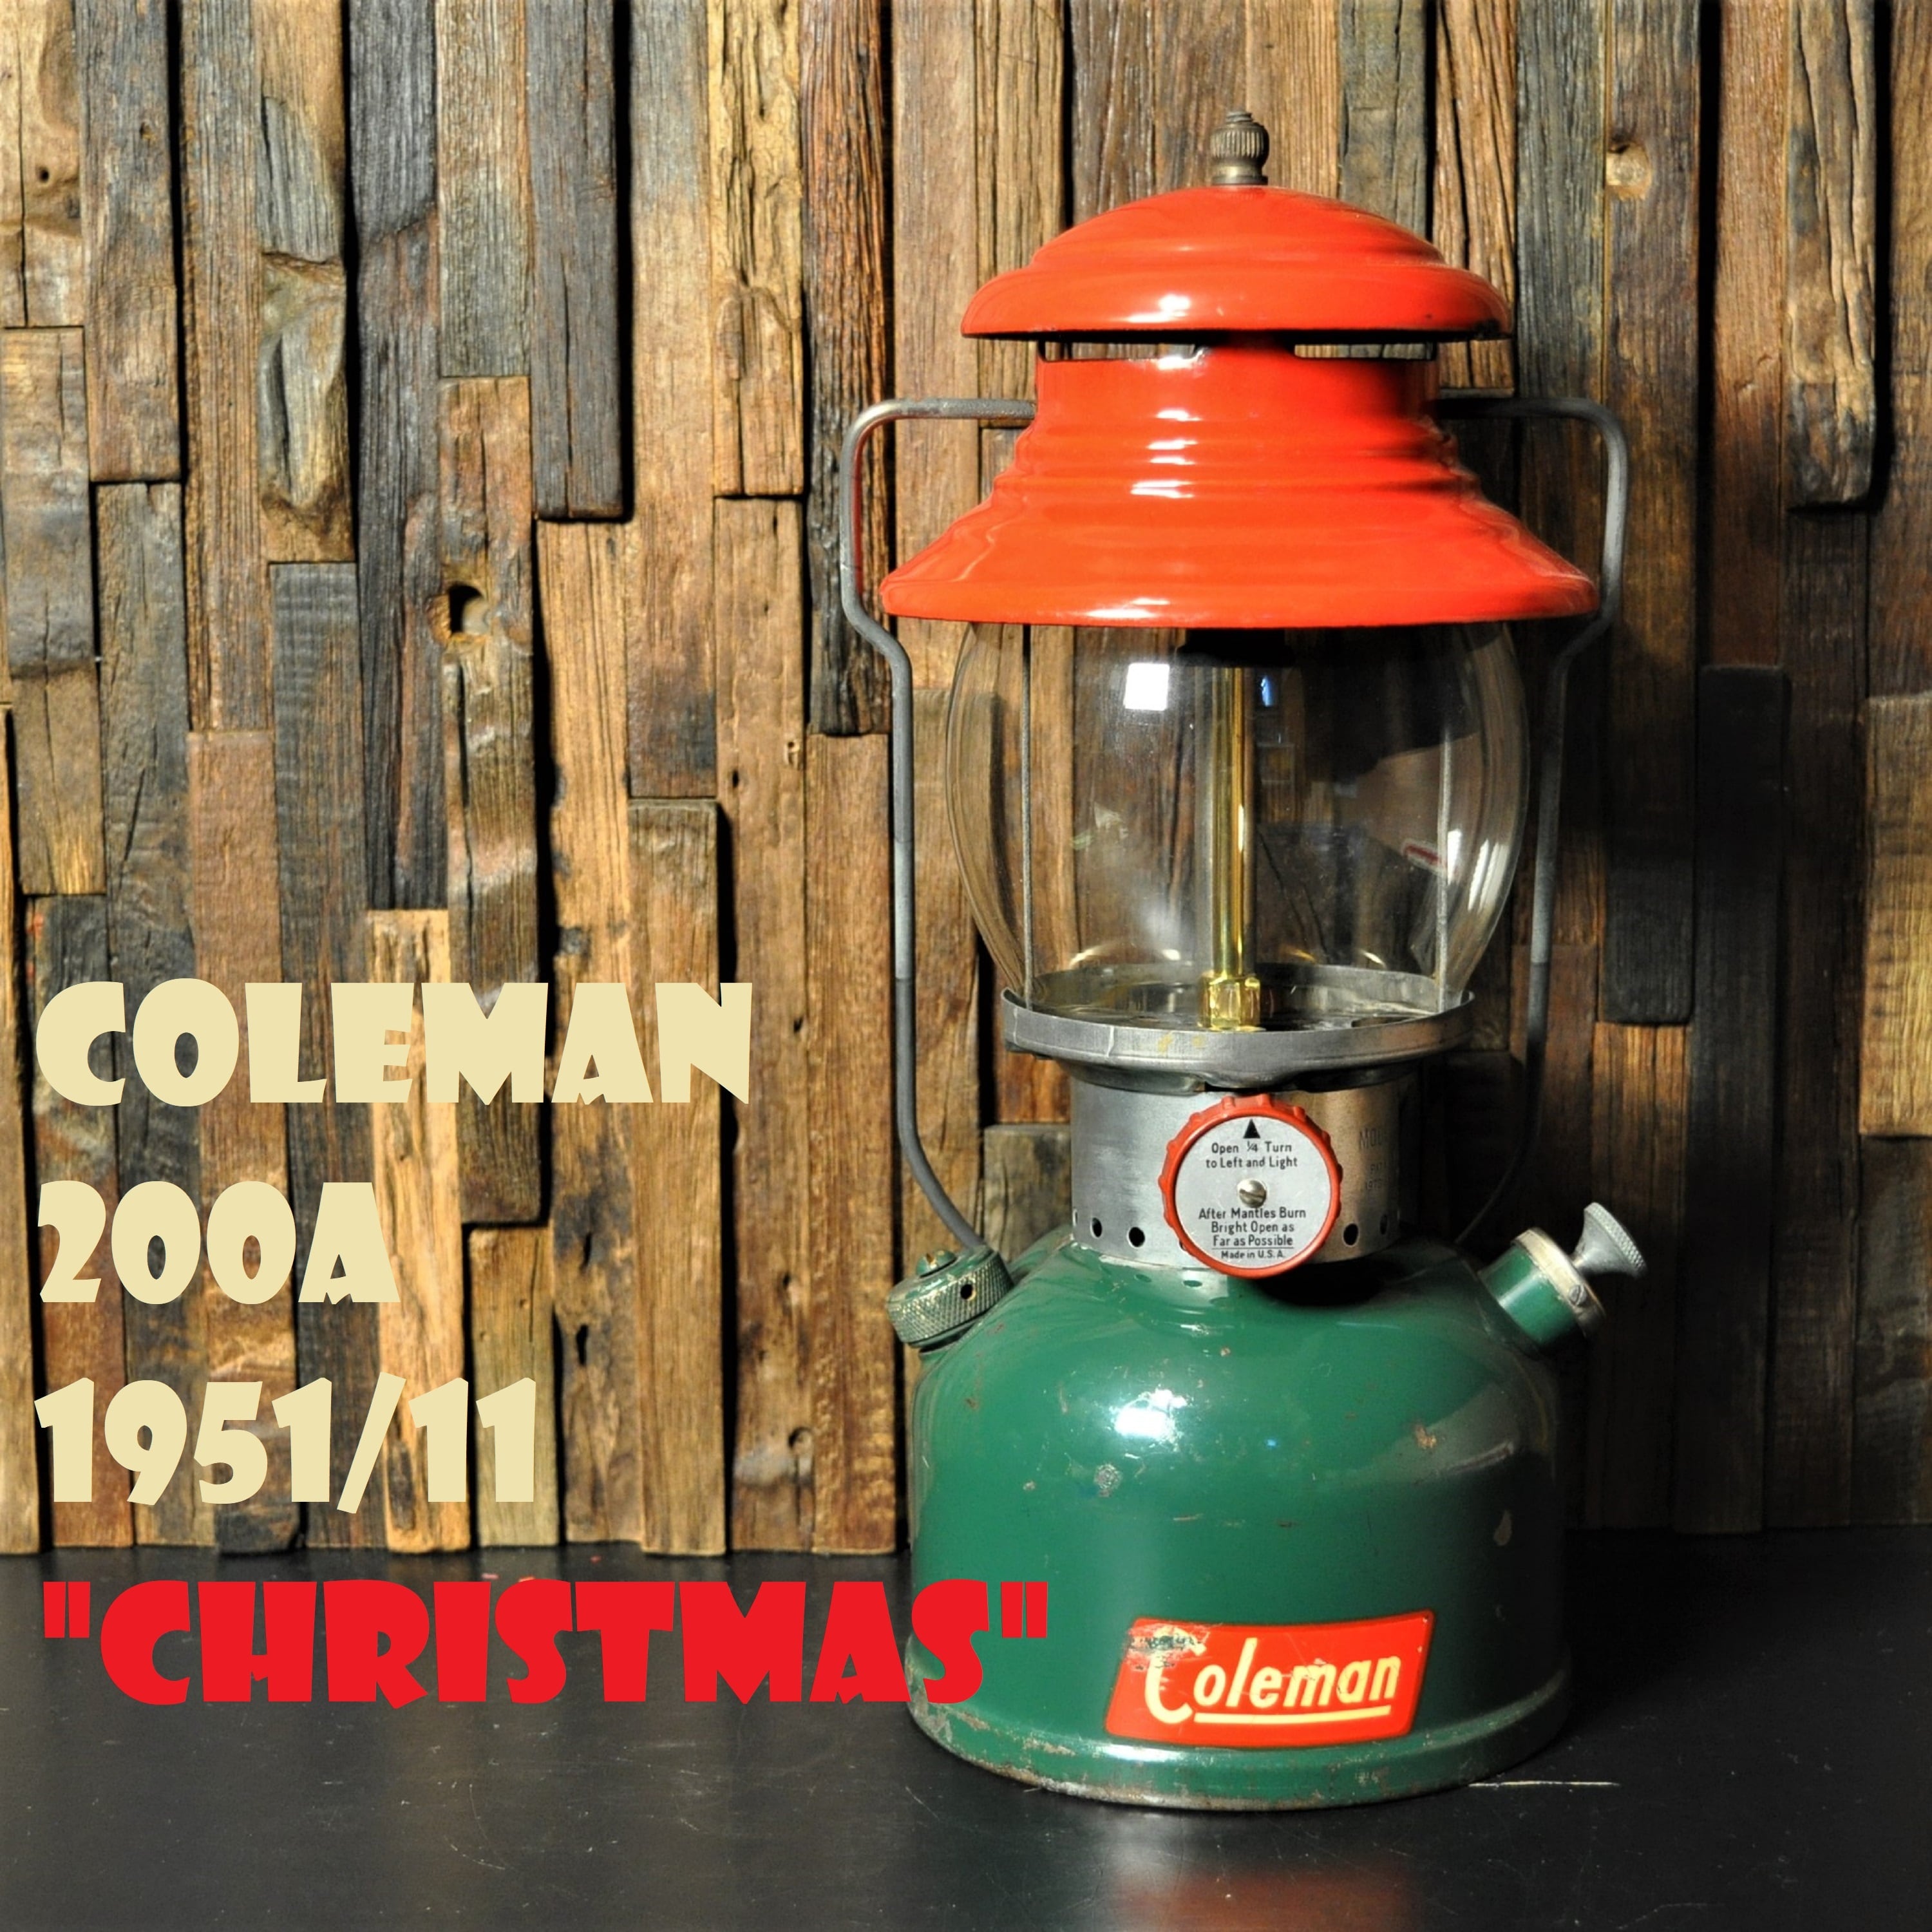 コールマン 200A 1951年11月製造 CHRISTMAS クリスマスランタン COLEMAN デカール貼付最初期モデル 完全オリジナル  ビンテージ 後期 | スーパービンテージデポ【Super Vintage Depot】 powered by BASE